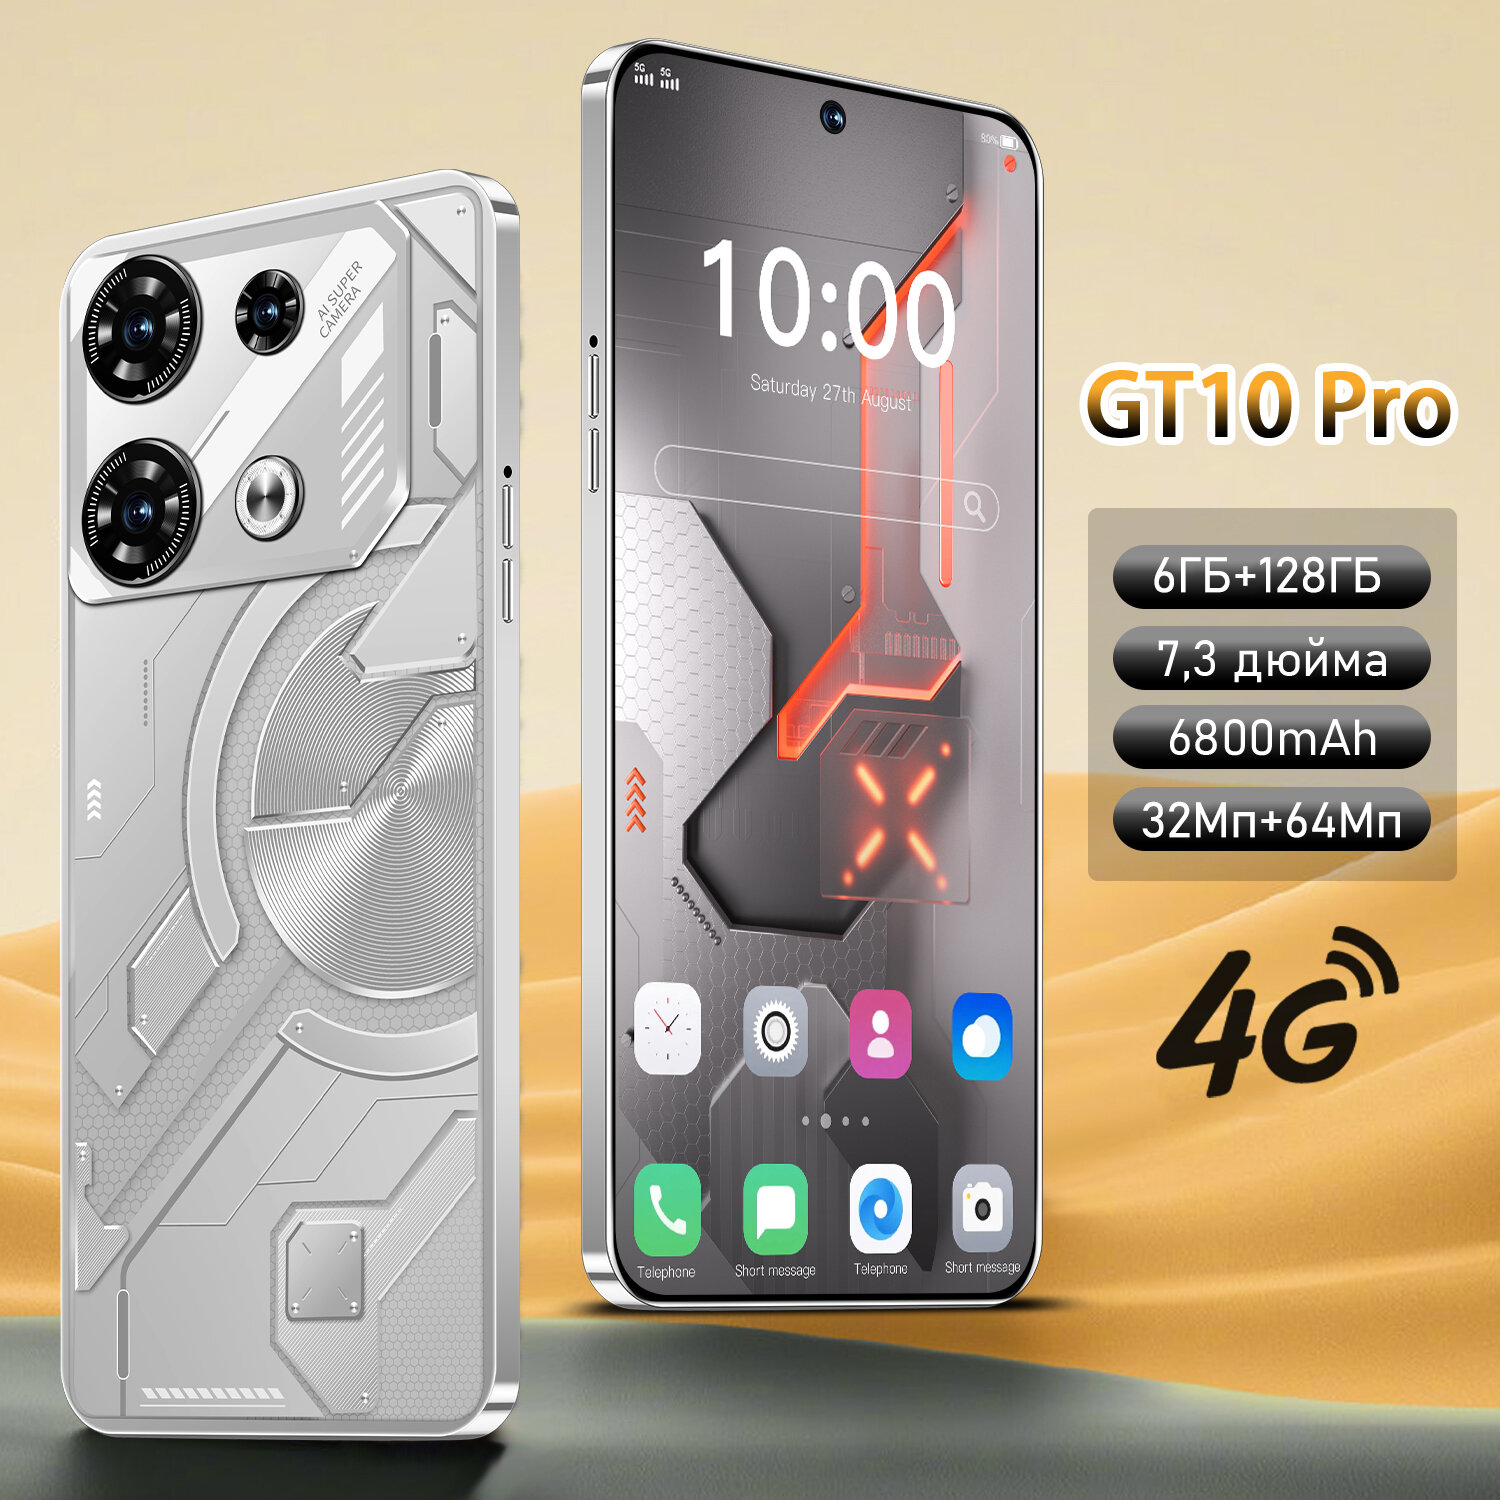 Смартфон ZUNYI GT 10 Pro, большой экран 7,3 дюйма, 4g, две SIM-карты, много встроенной памяти, изысканный подарок, 6G+128G, серебряный Серебро